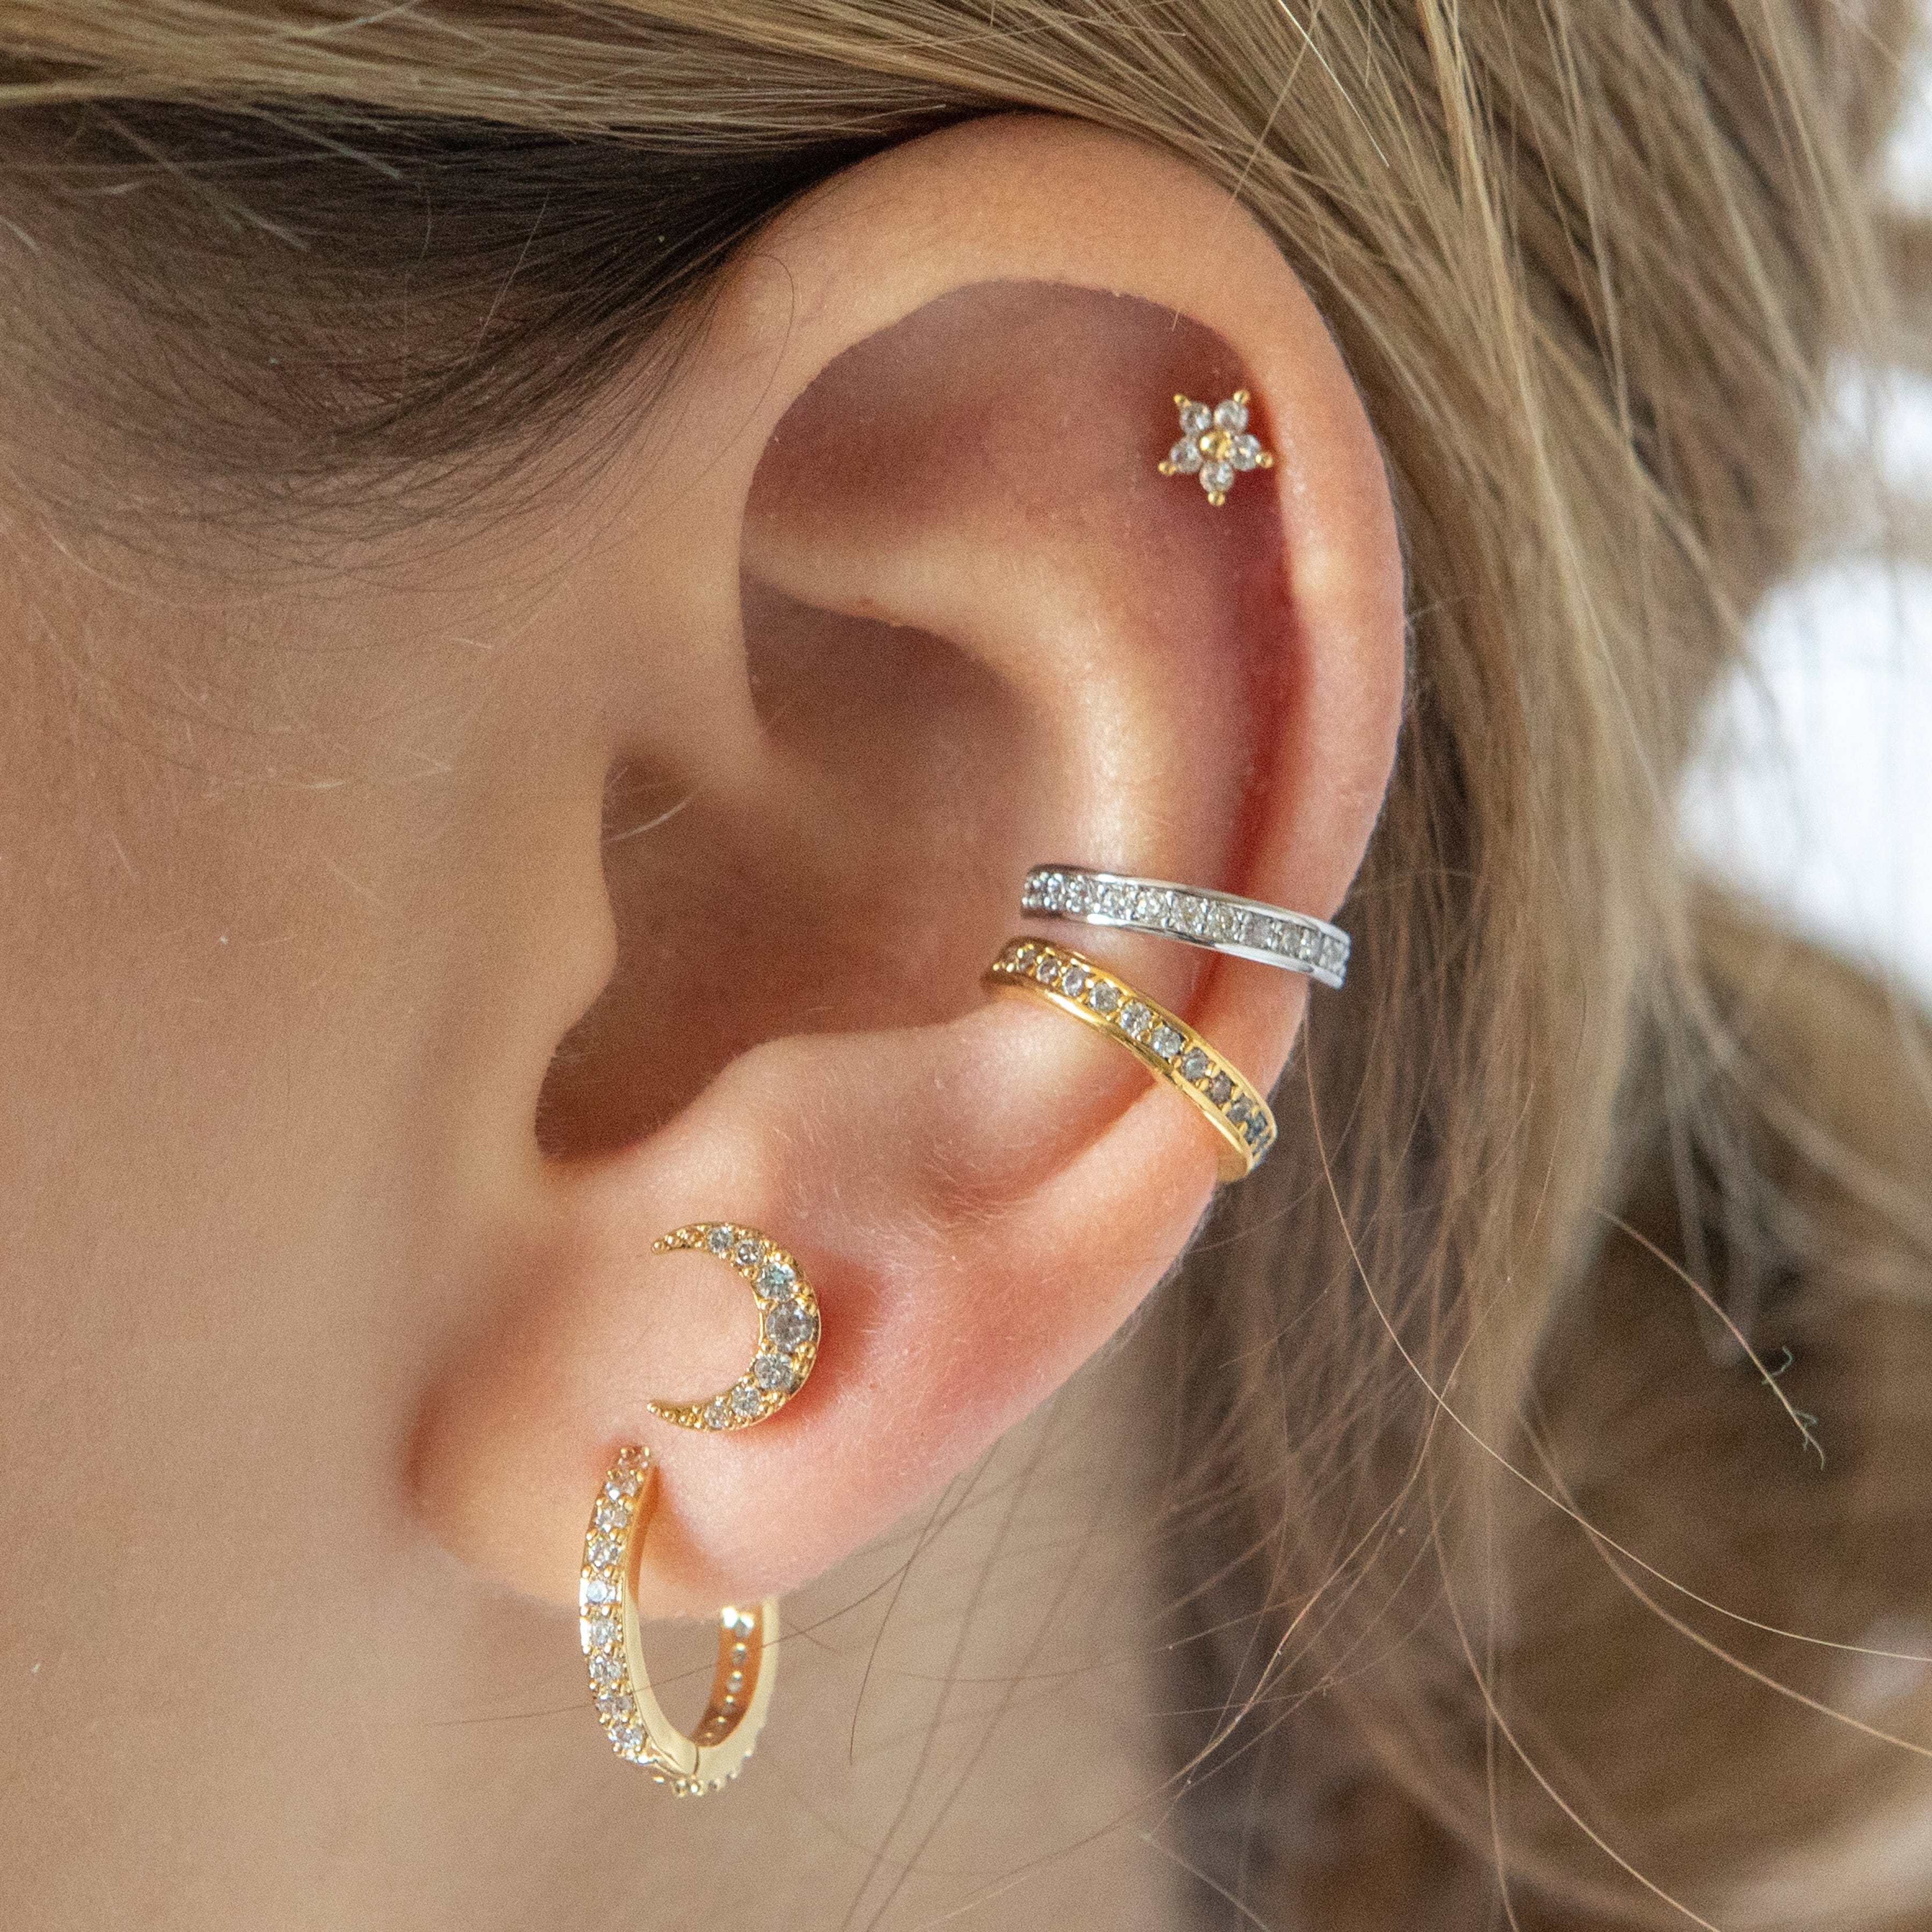 Twilight London Stud Earrings Crescent Moon Piercing